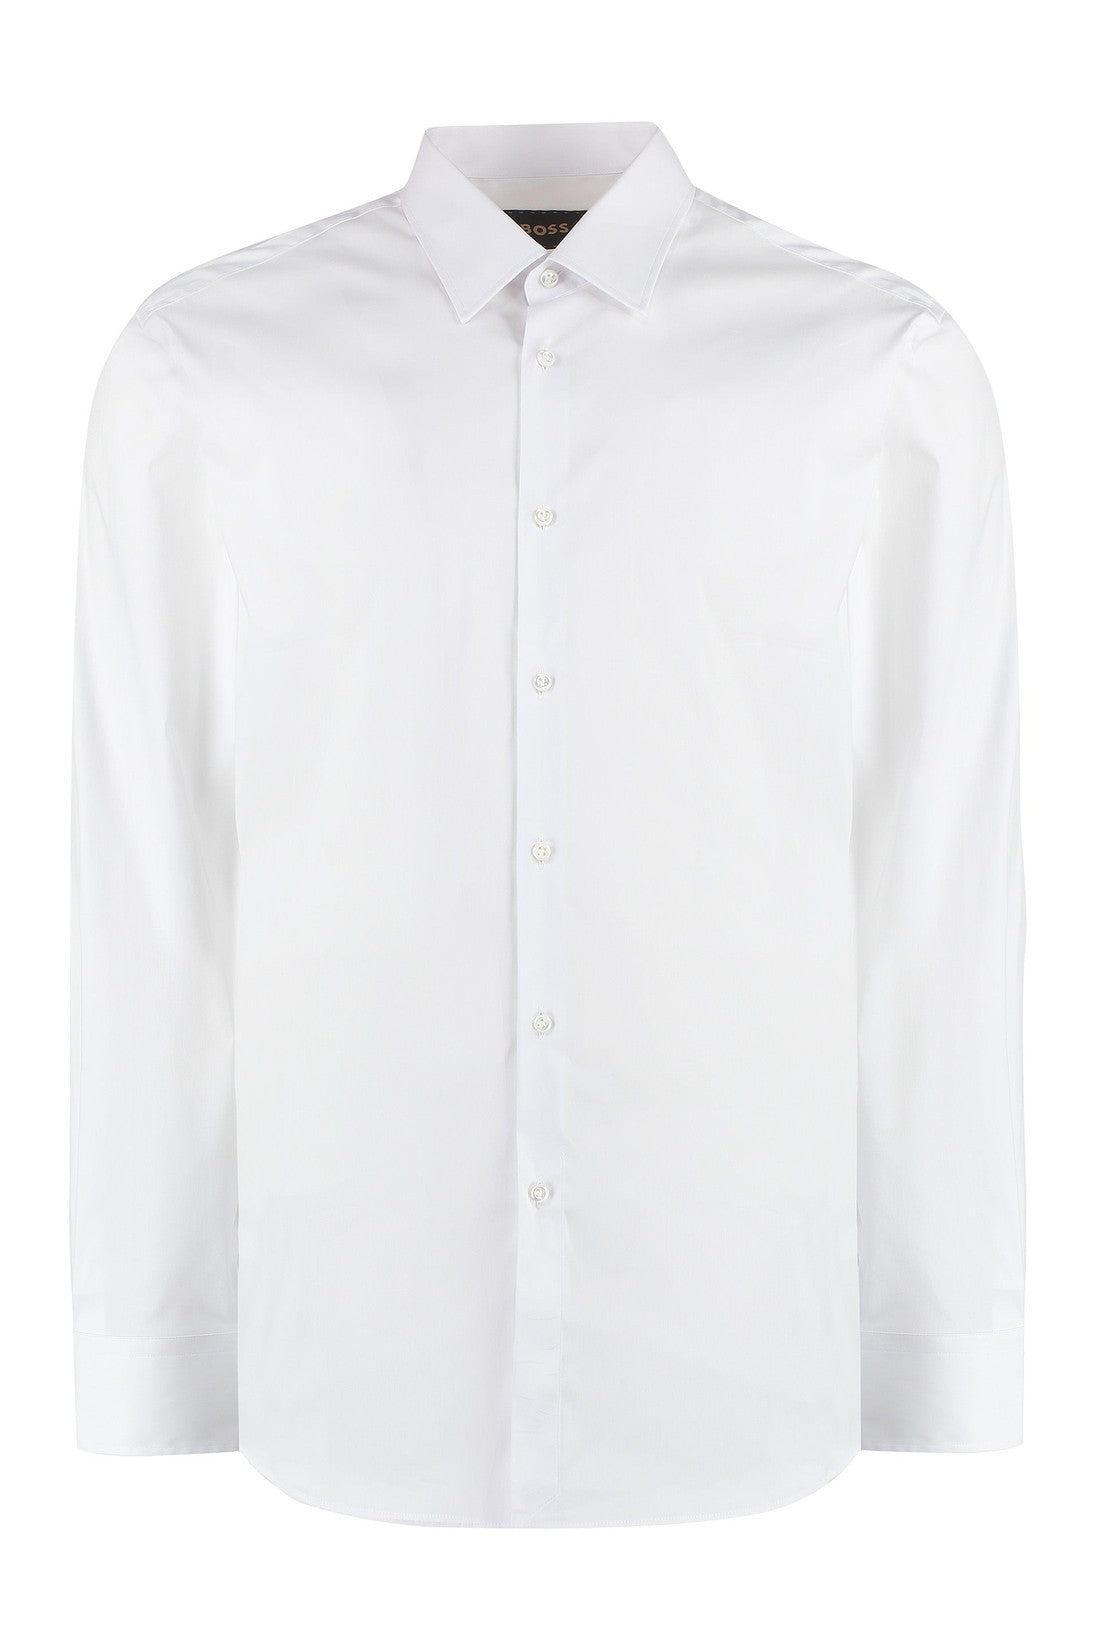 BOSS-OUTLET-SALE-Cotton shirt-ARCHIVIST